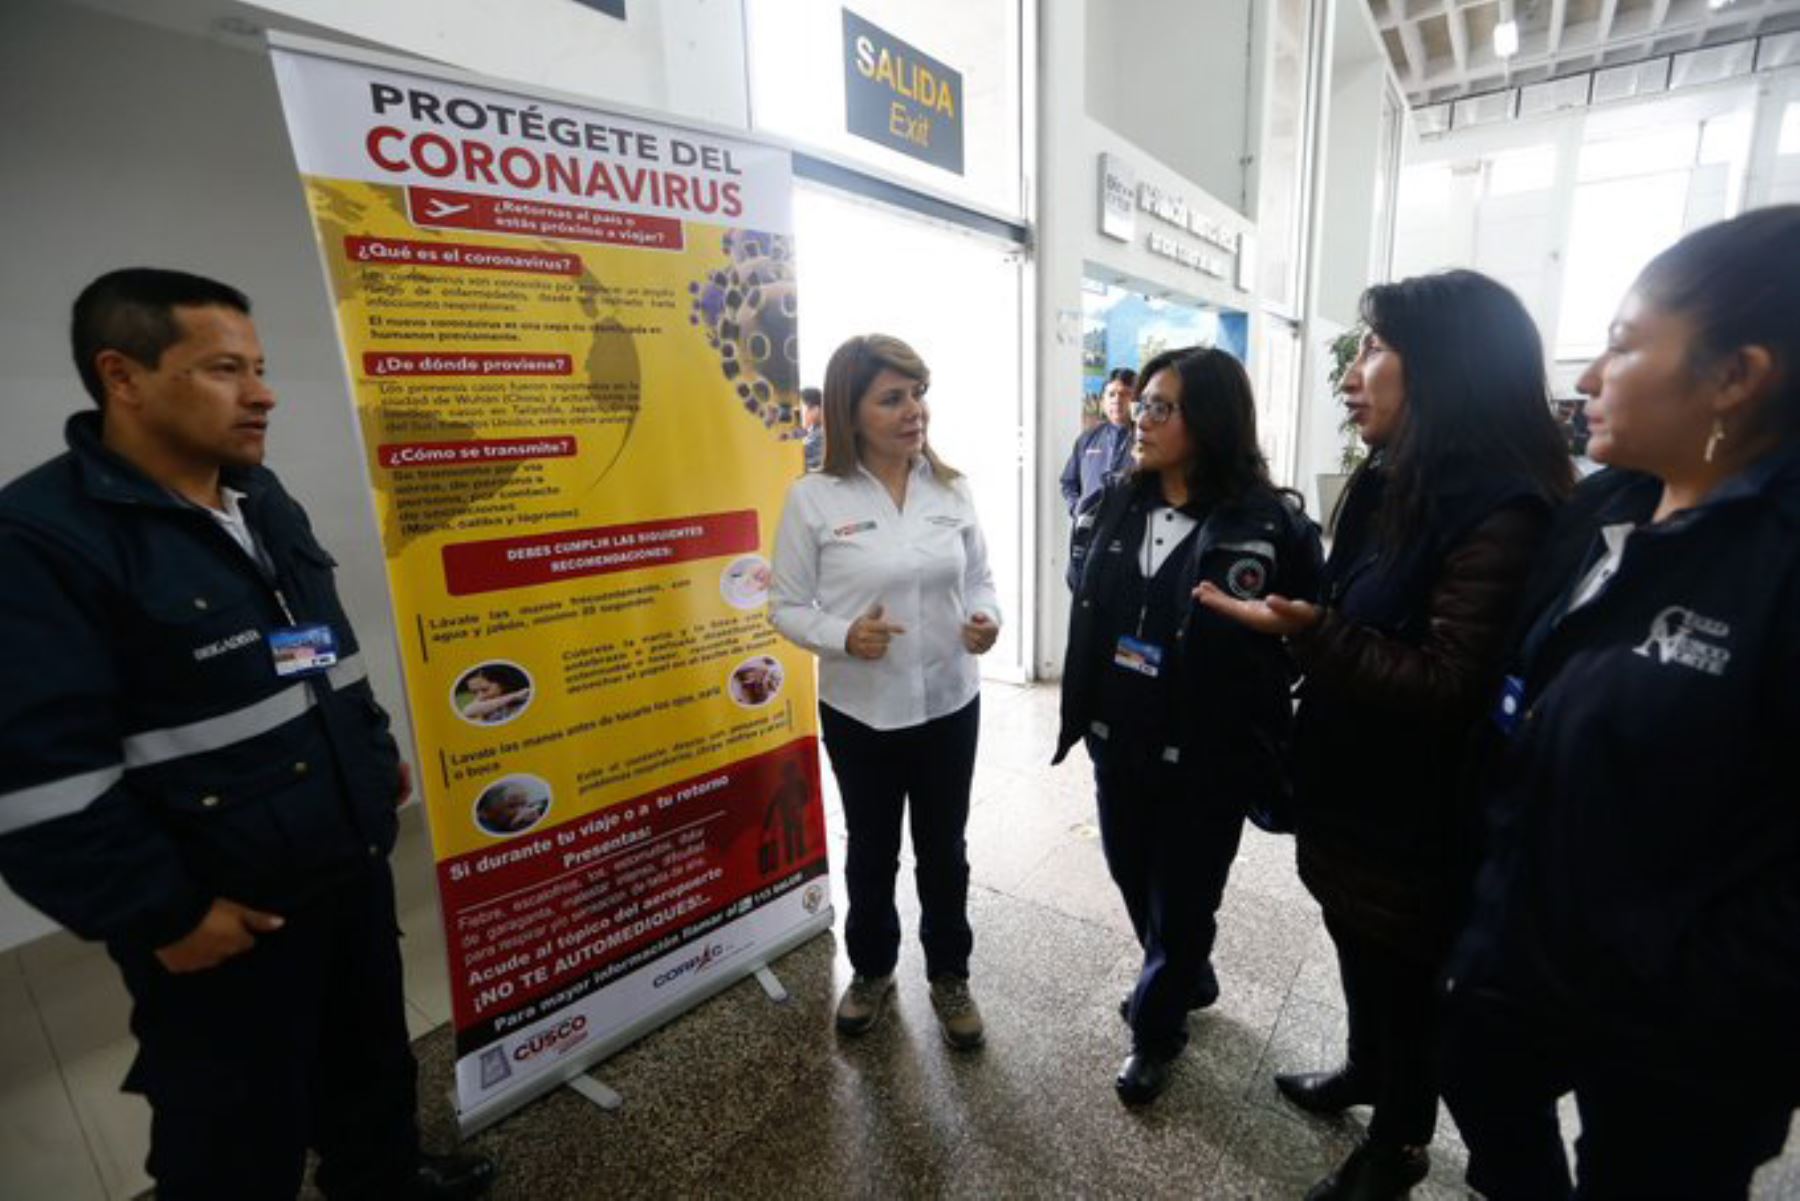 La ministra de Salud, Elizabeth Hinostroza Pereyra, supervisó hoy las acciones de control y vigilancia en el aeropuerto internacional Alejandro Velasco Astete de la ciudad de Cusco frente a los probables ingresos de pasajeros con sospechas de haber contraído coronavirus COVID-19.